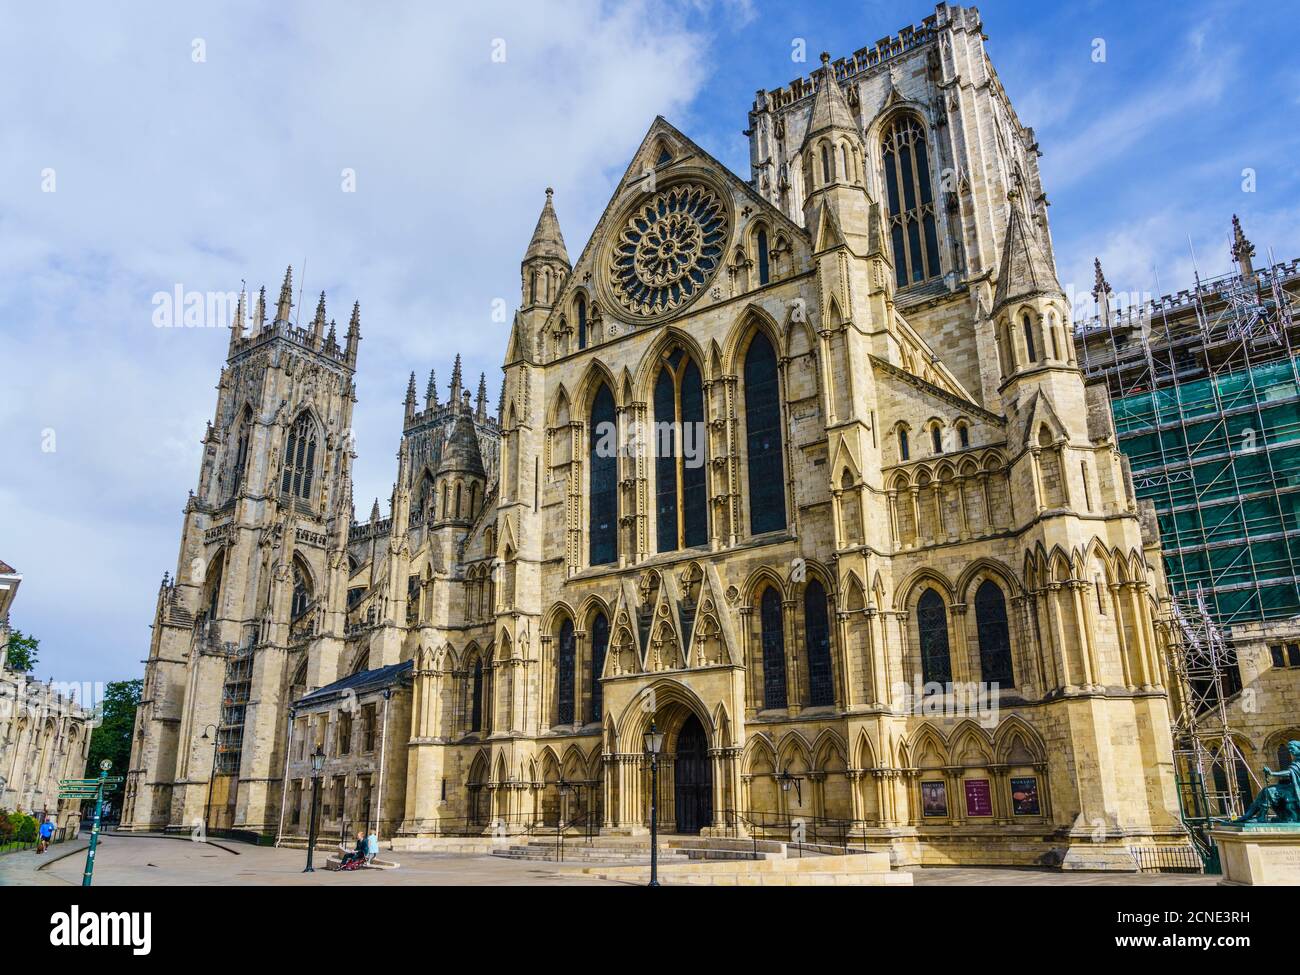 York Minster, l'une des plus grandes cathédrales médiévales d'Europe, York, North Yorkshire, Angleterre, Royaume-Uni, Europe Banque D'Images